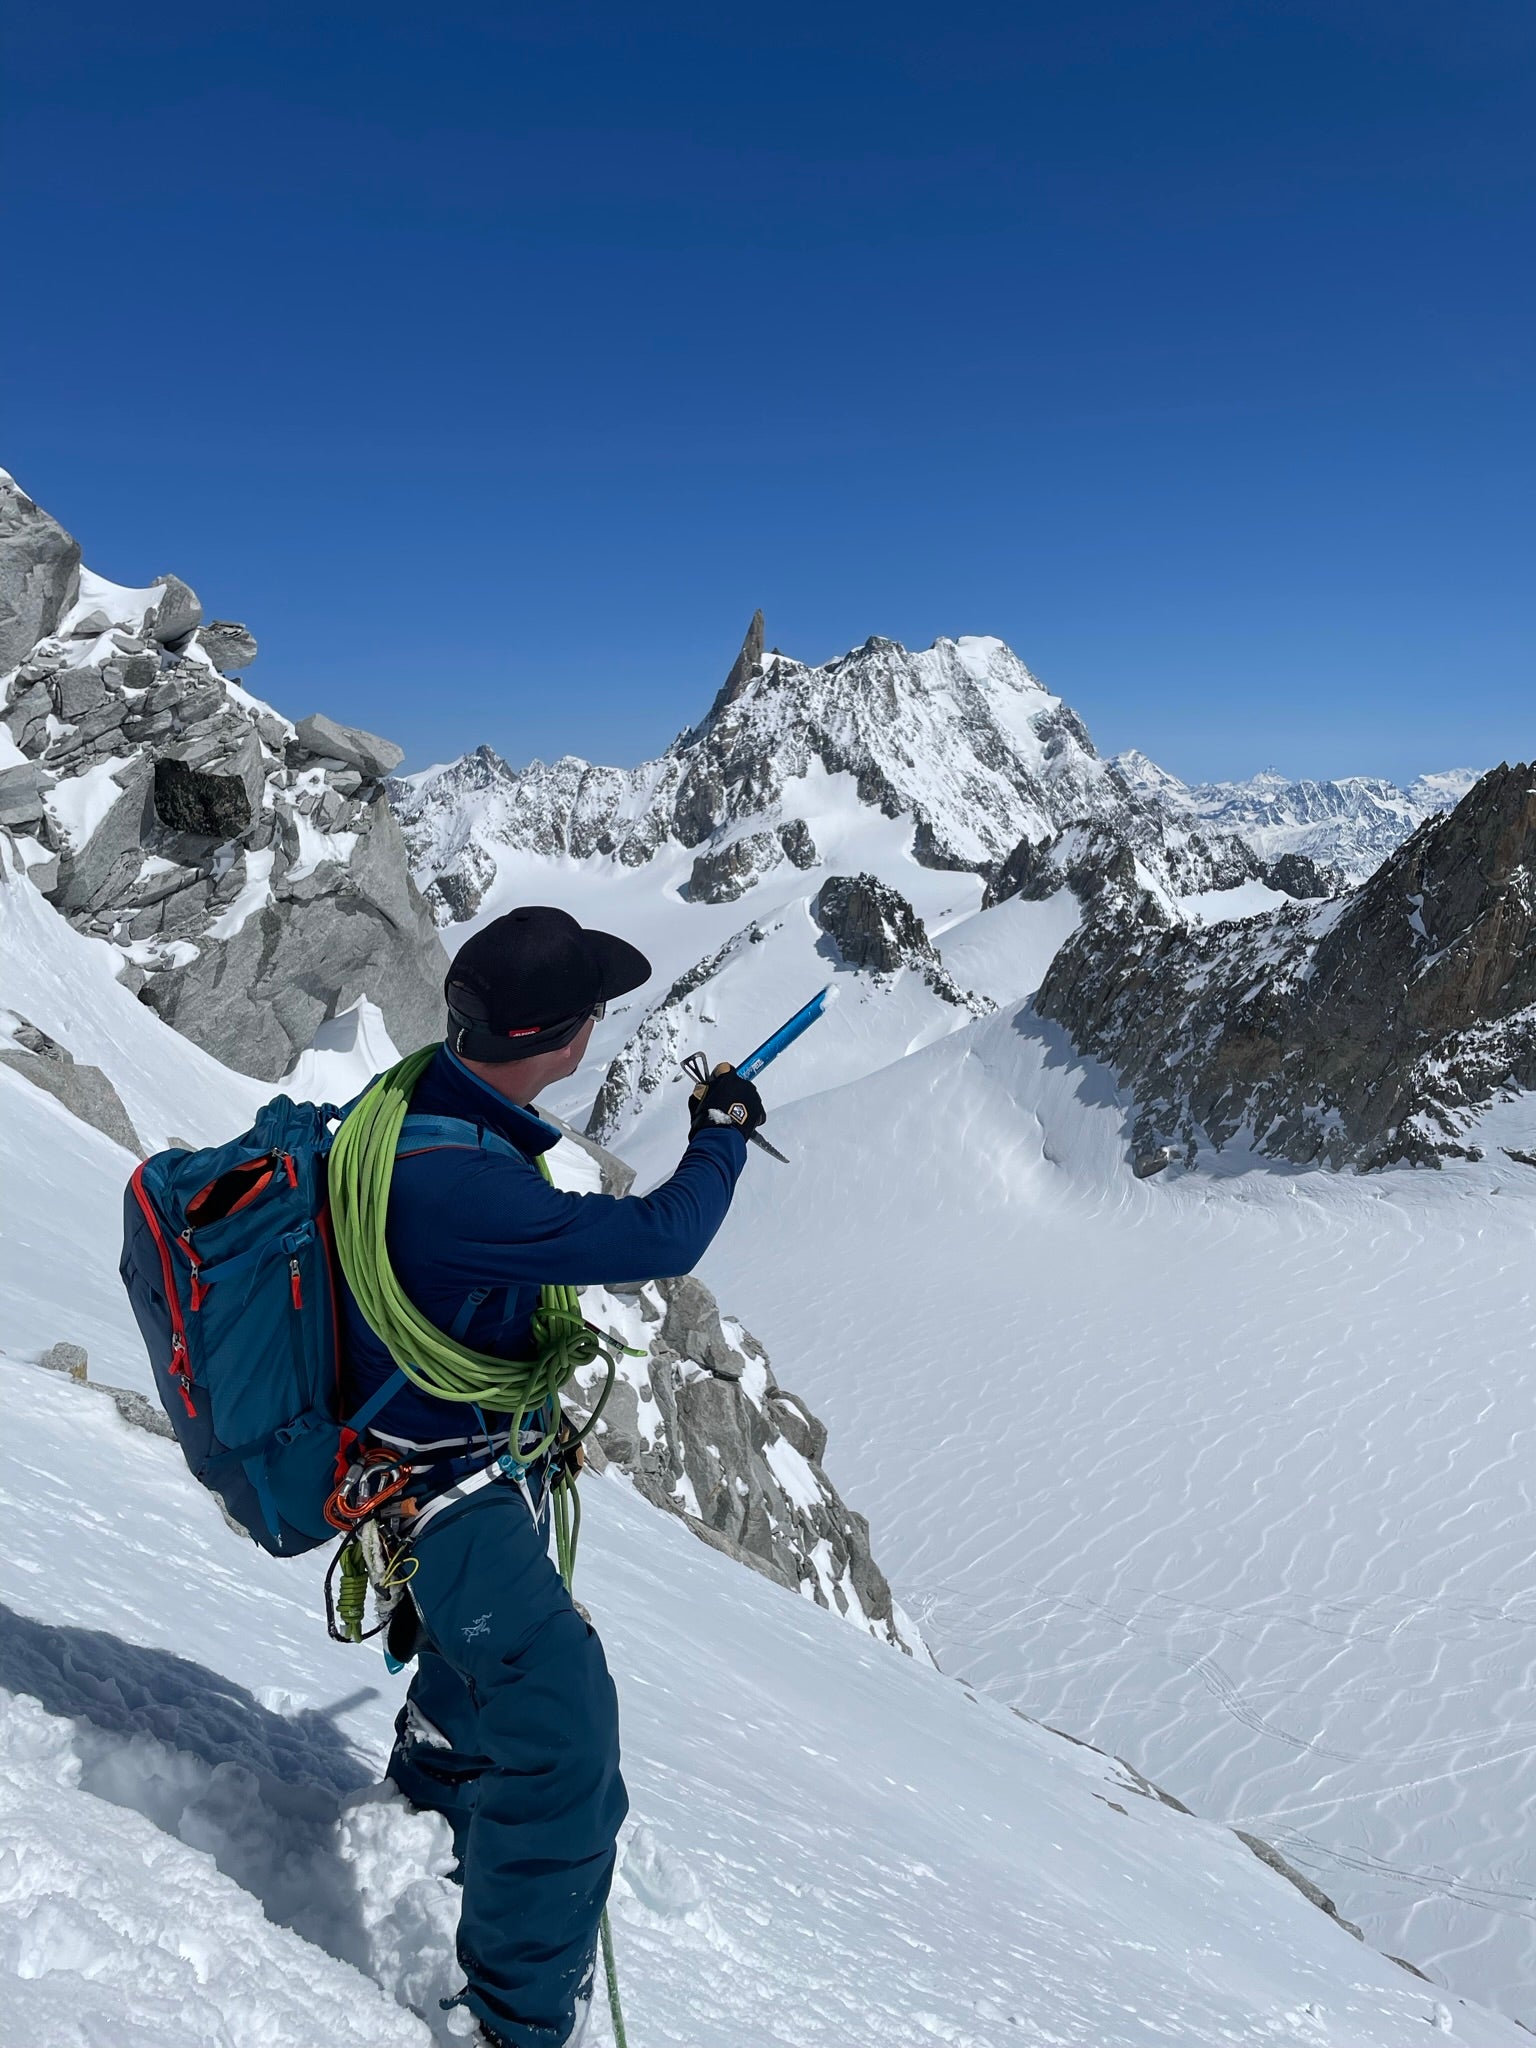 Chamonix mit Mont Blanc 4808m Skibesteigung